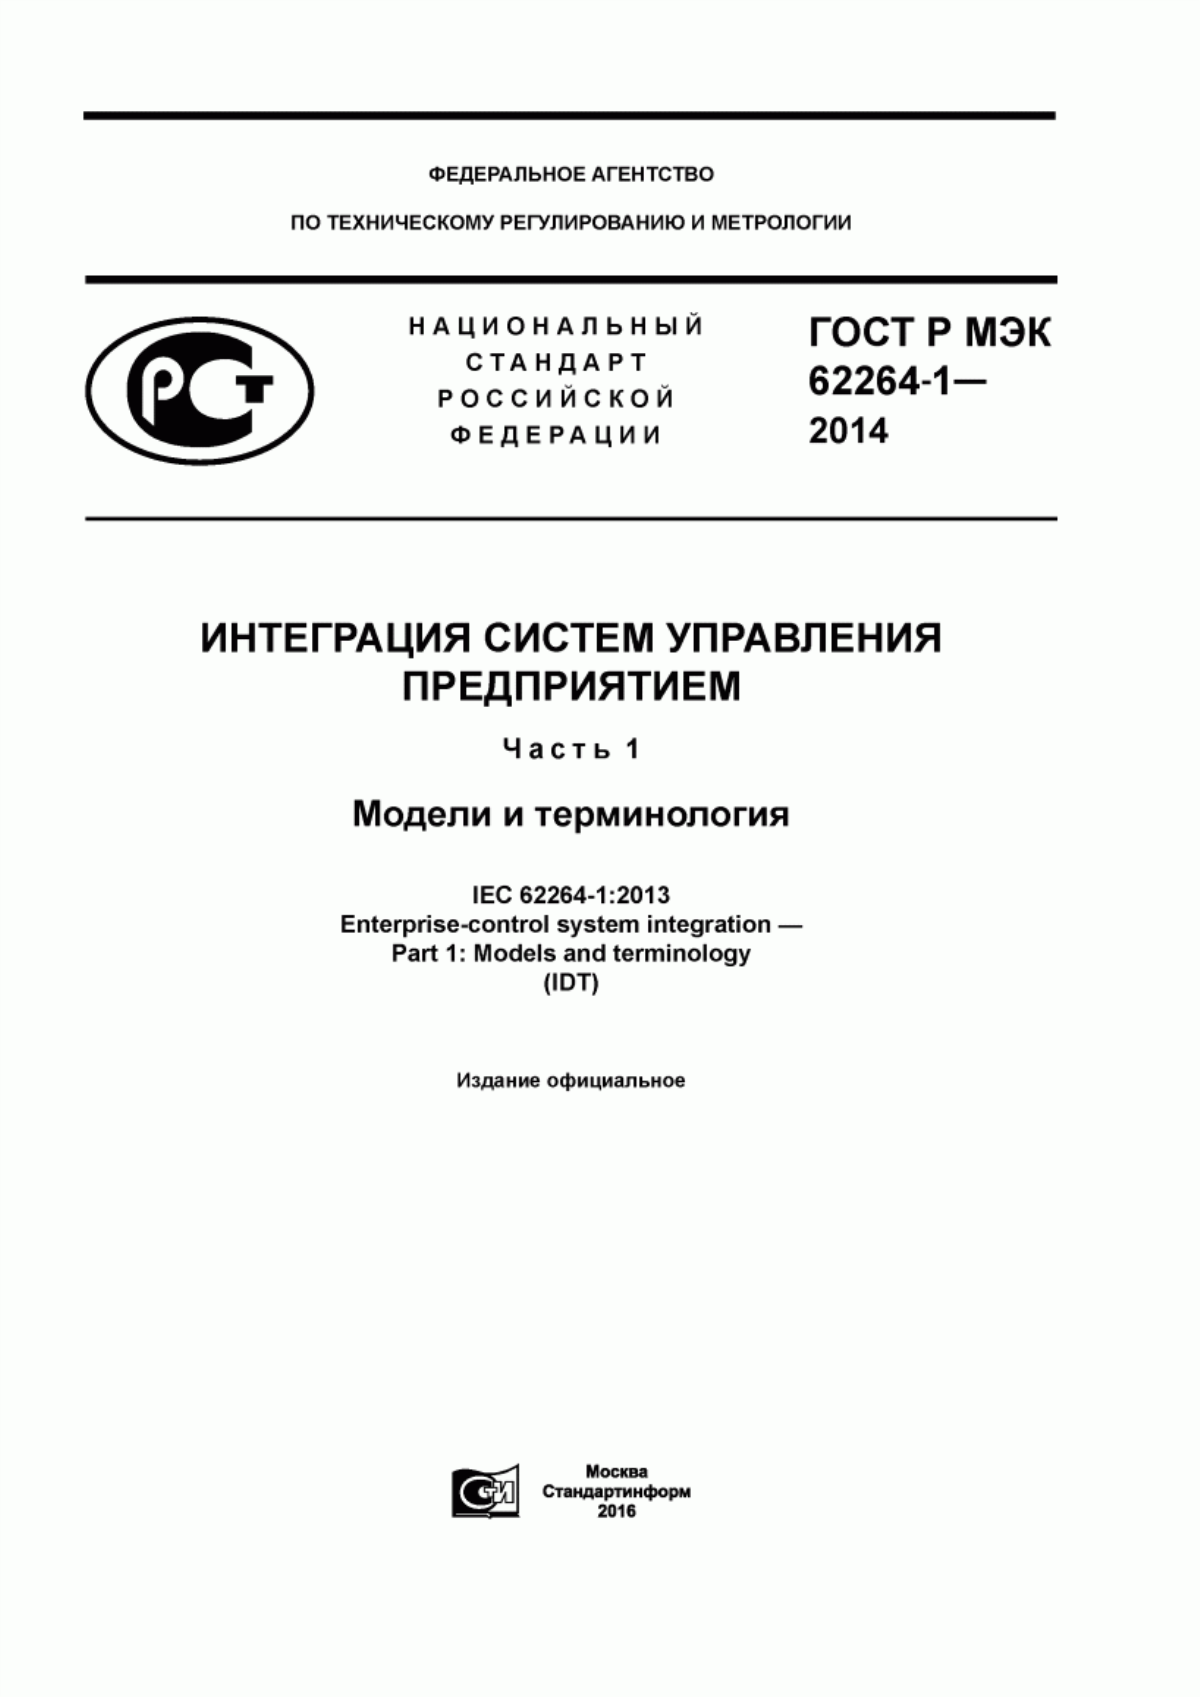 ГОСТ Р МЭК 62264-1-2014 Интеграция систем управления предприятием. Часть 1. Модели и терминология